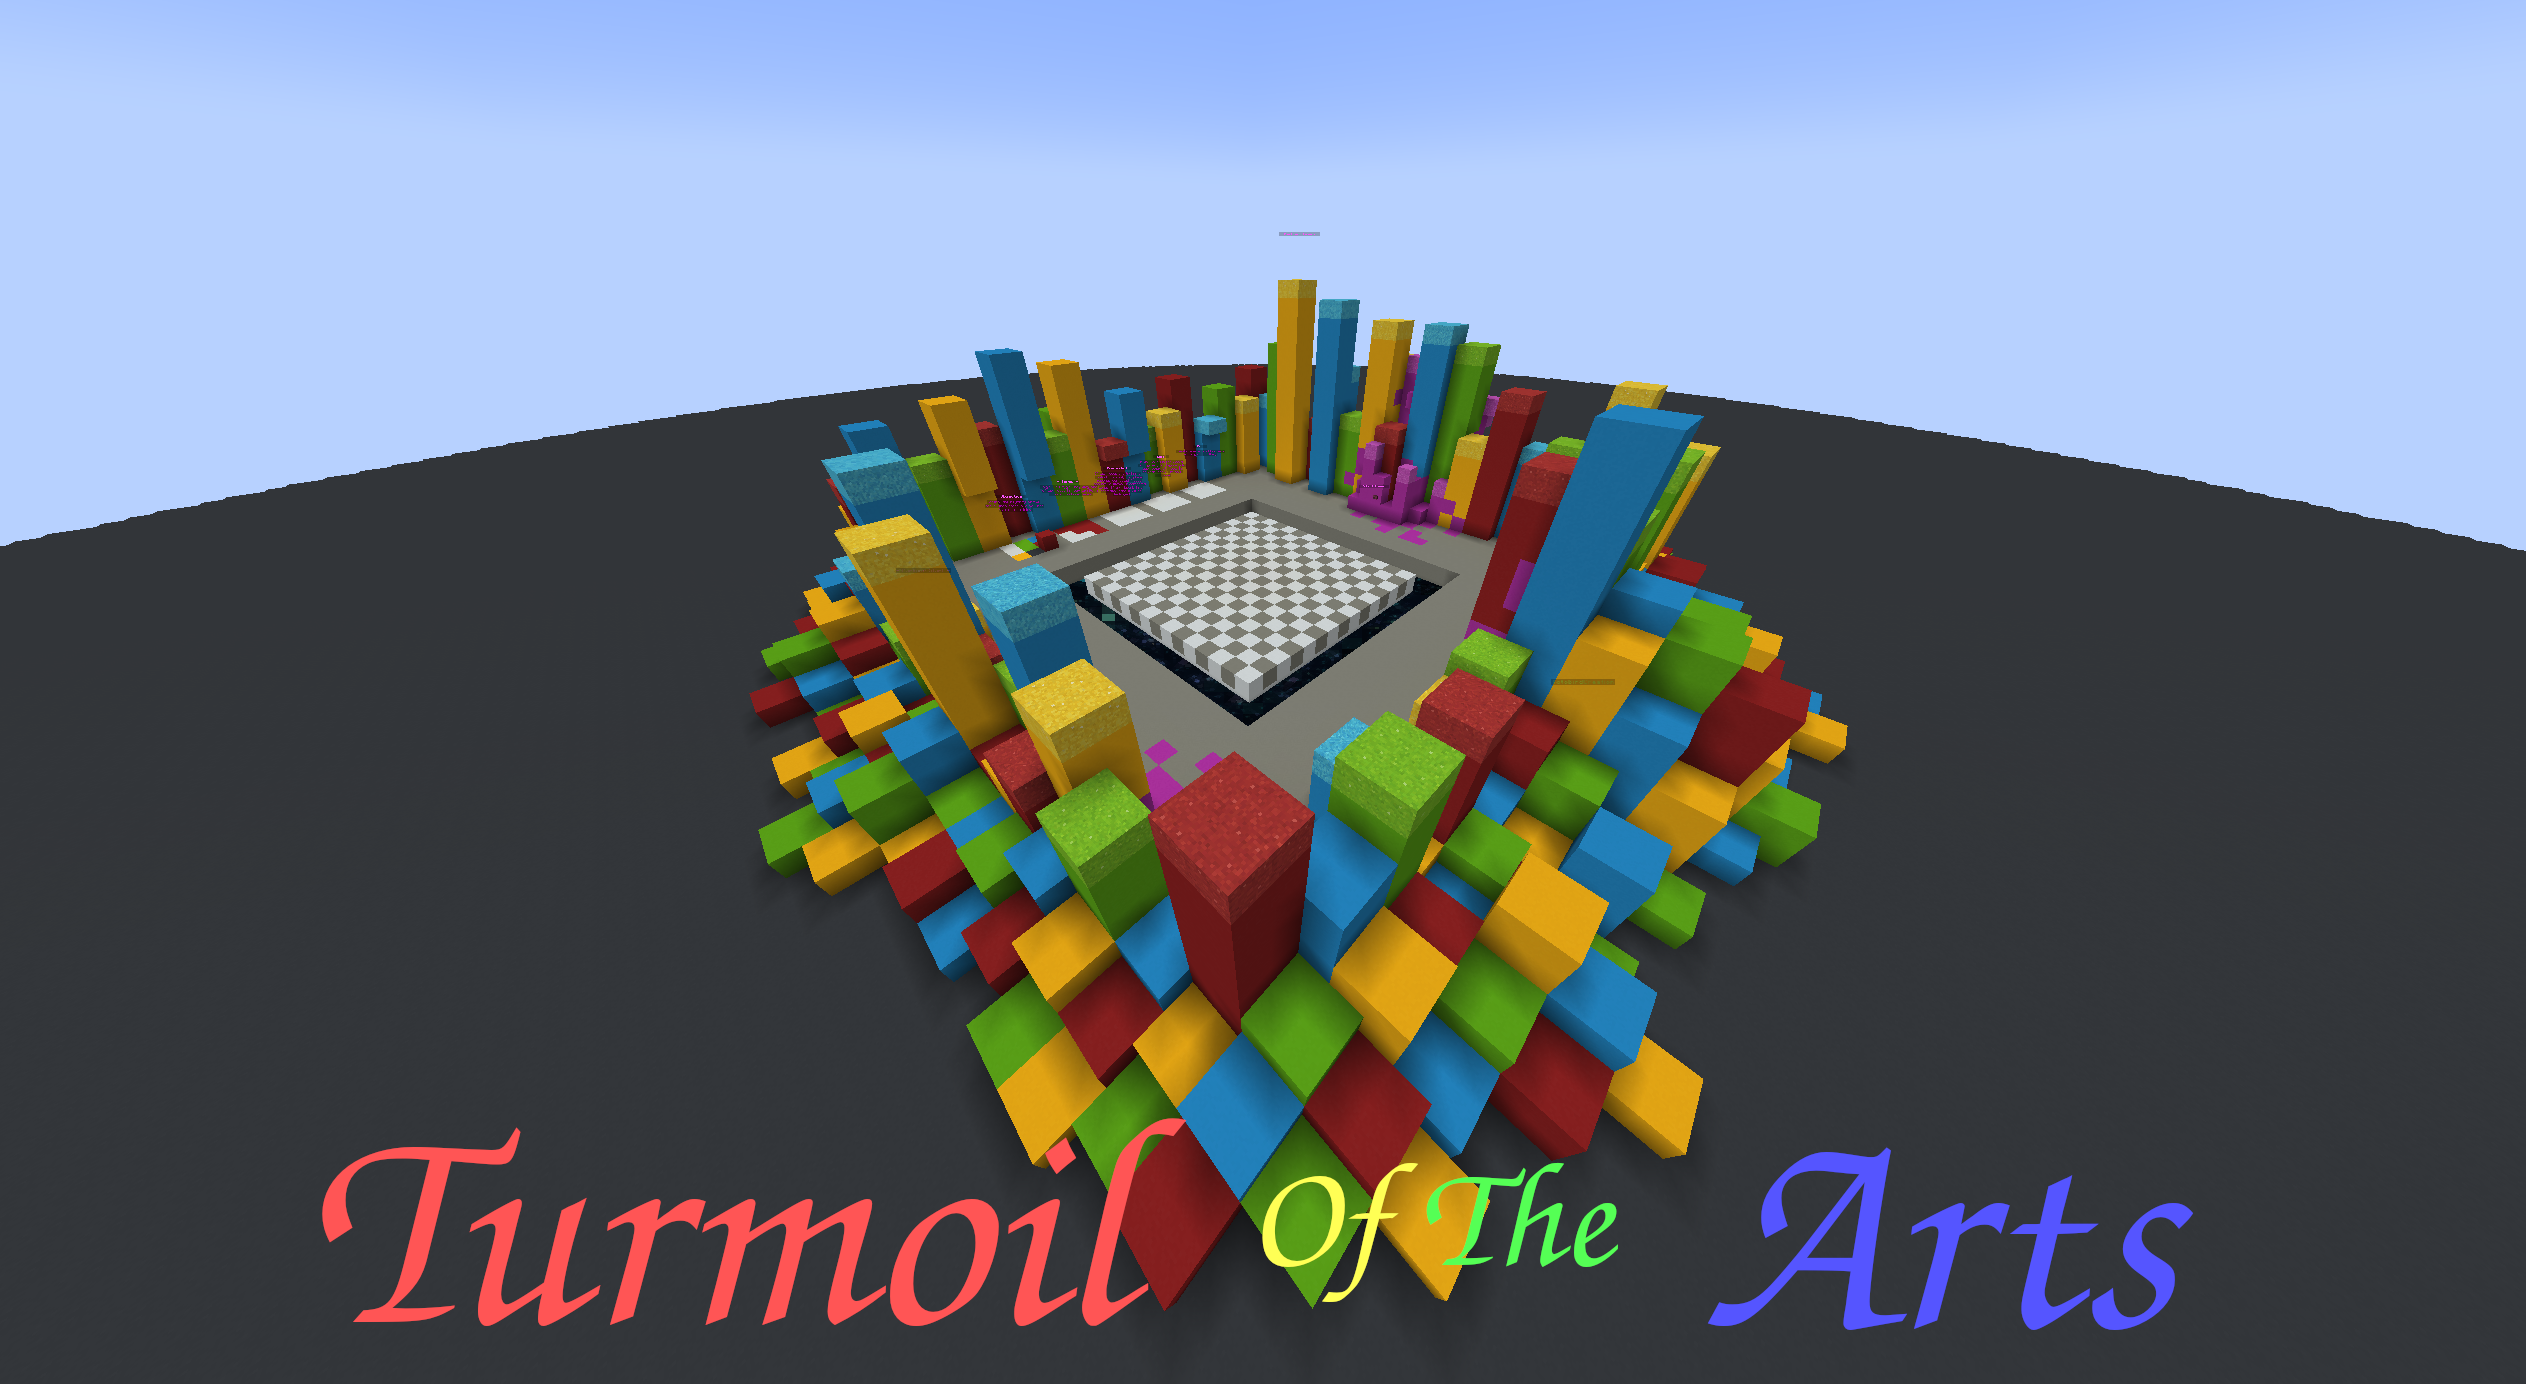 Télécharger Turmoil of the Arts pour Minecraft 1.18.1